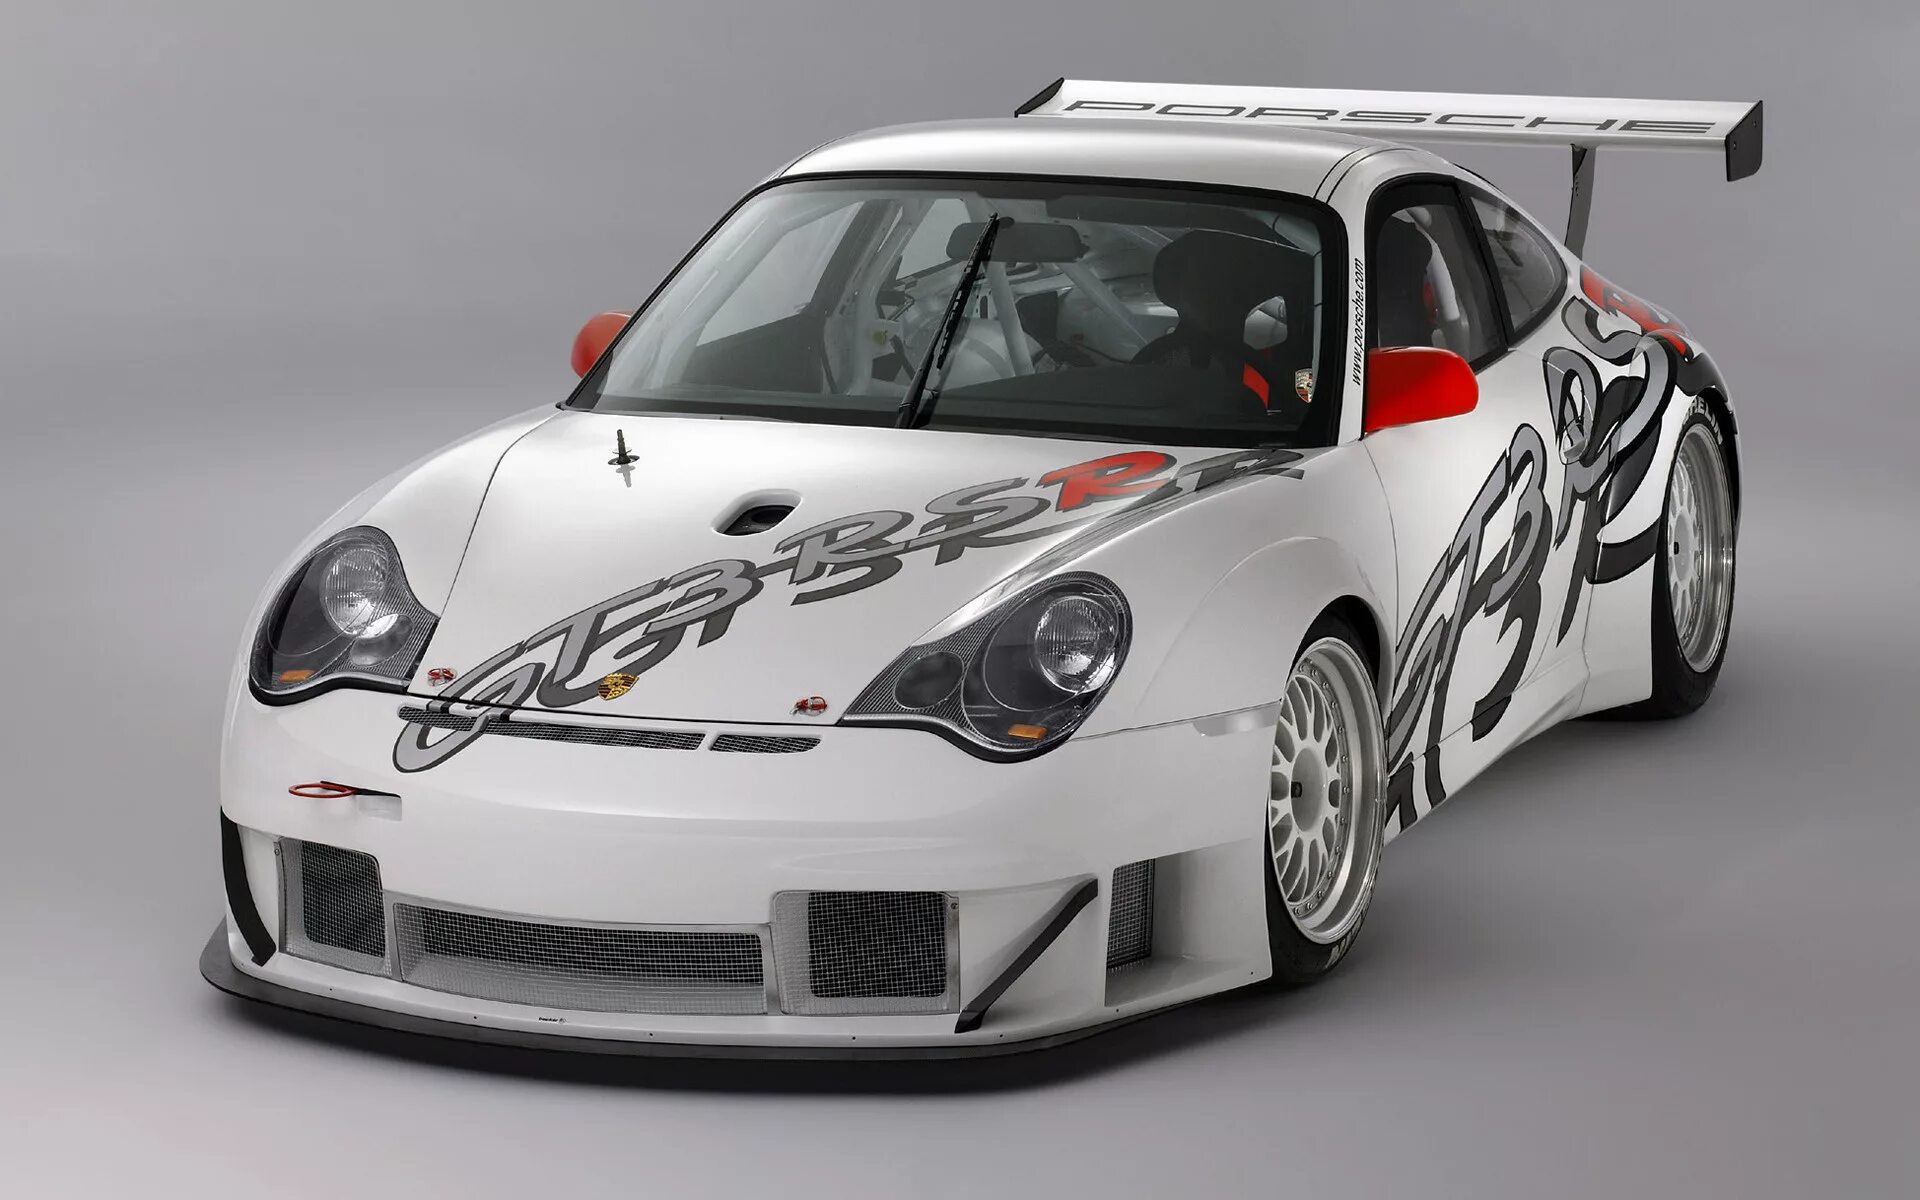 Magic v2 rsr. Porsche 911 996 gt3 RSR. Porsche 911 gt3 RSR. Porsche 996 gt3 RSR. Porsche 911 gt3 RSR 2007.